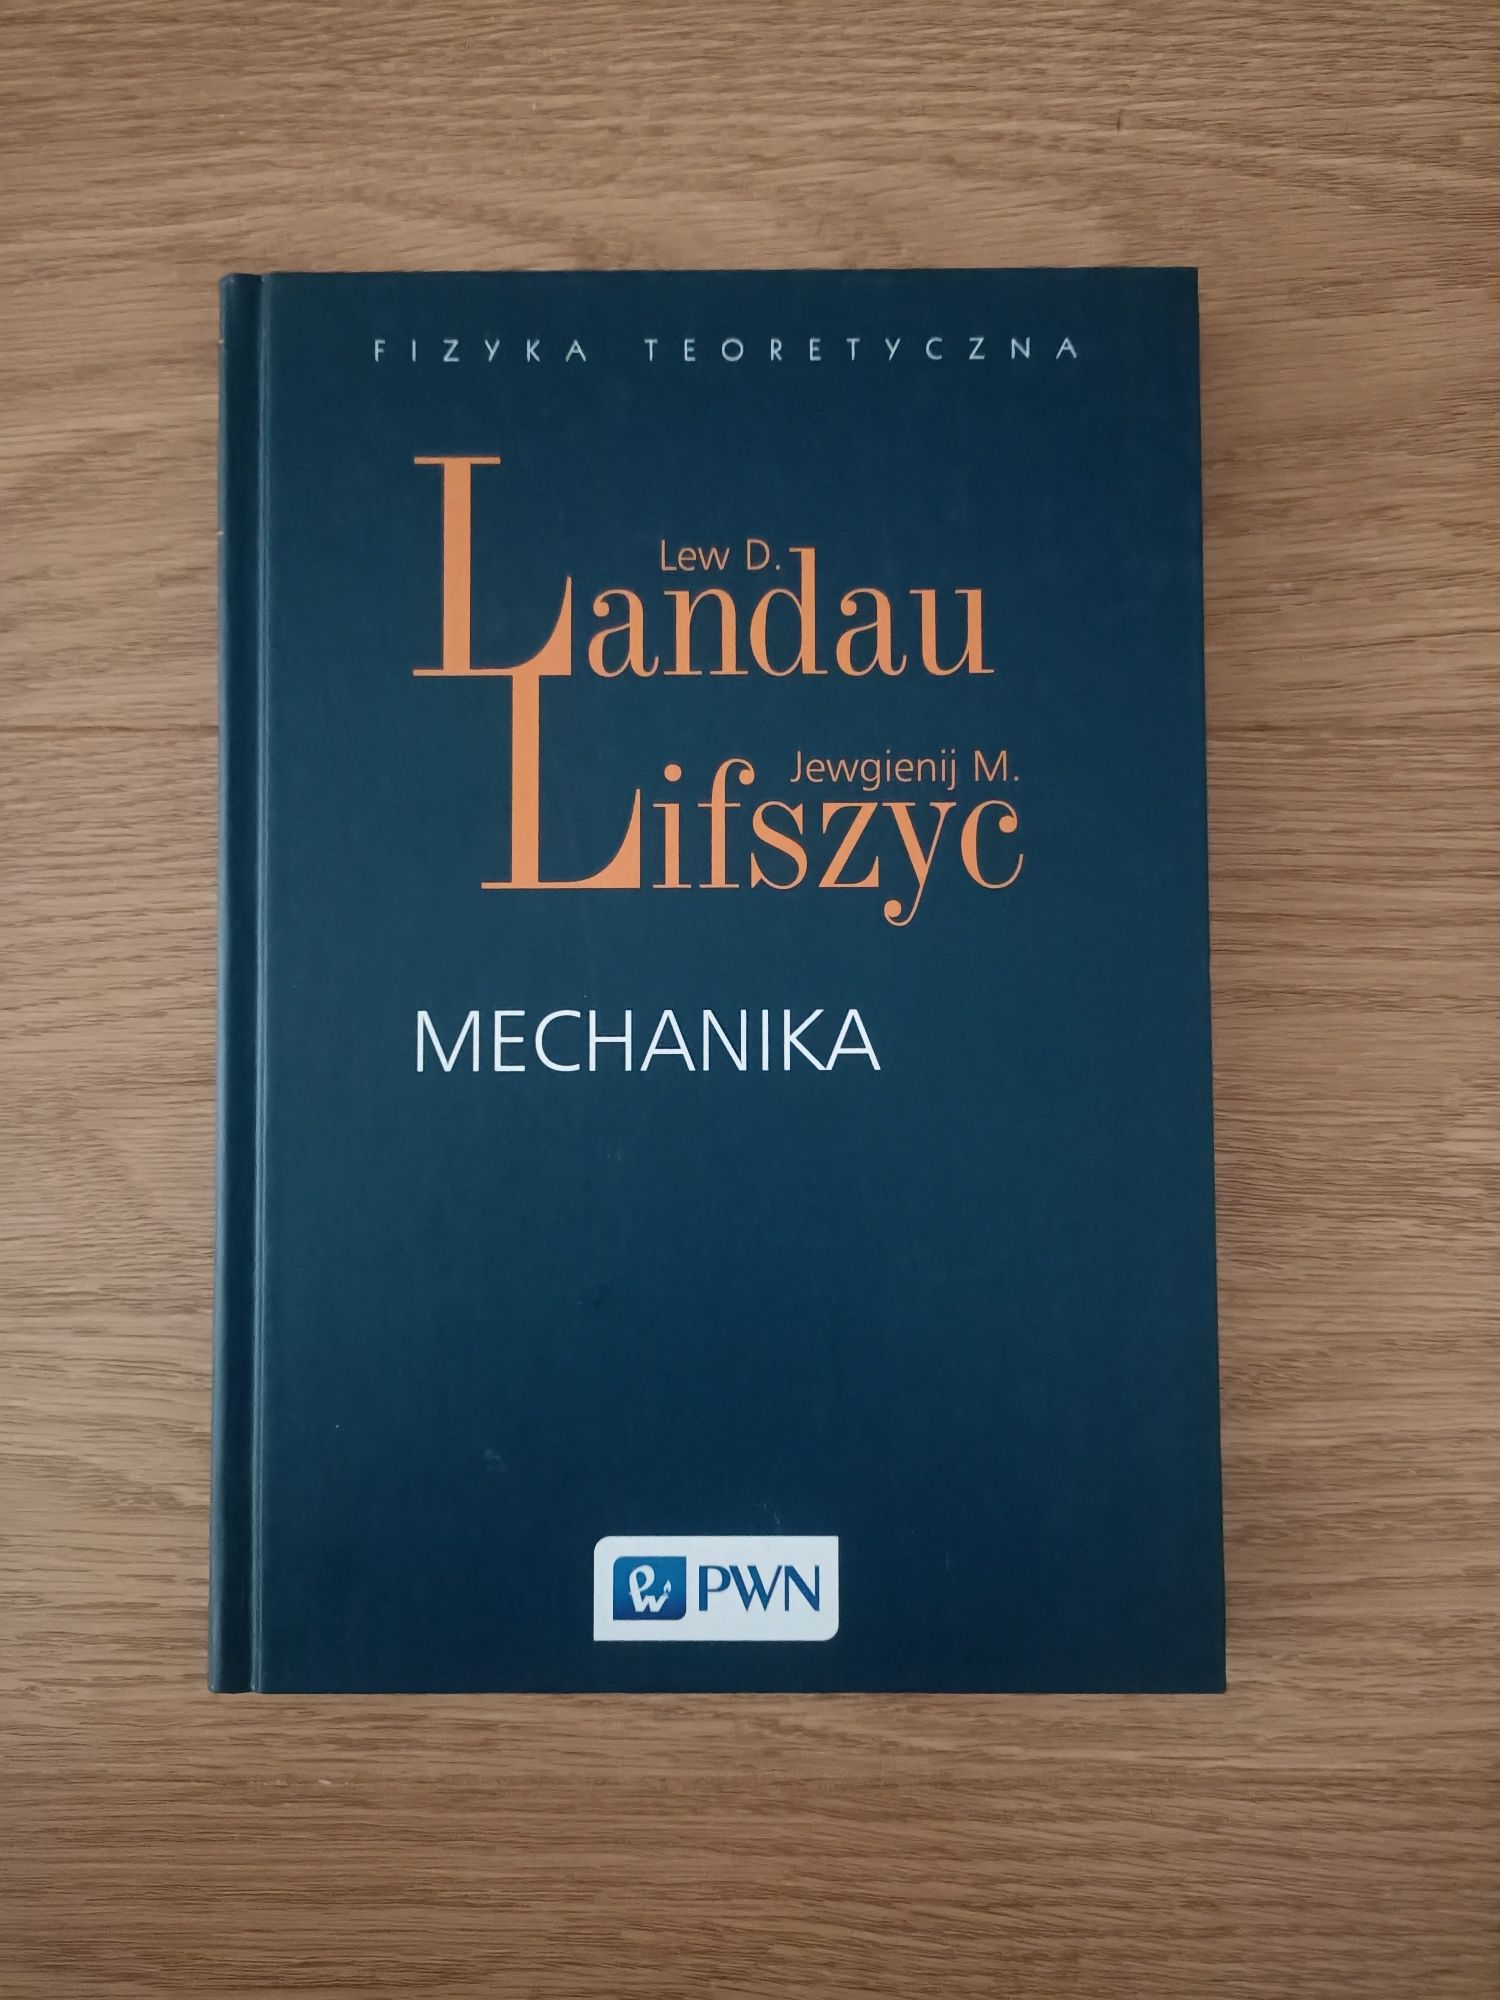 Mechanika (z serii fizyka teoretyczna); Landau i Lifszyc